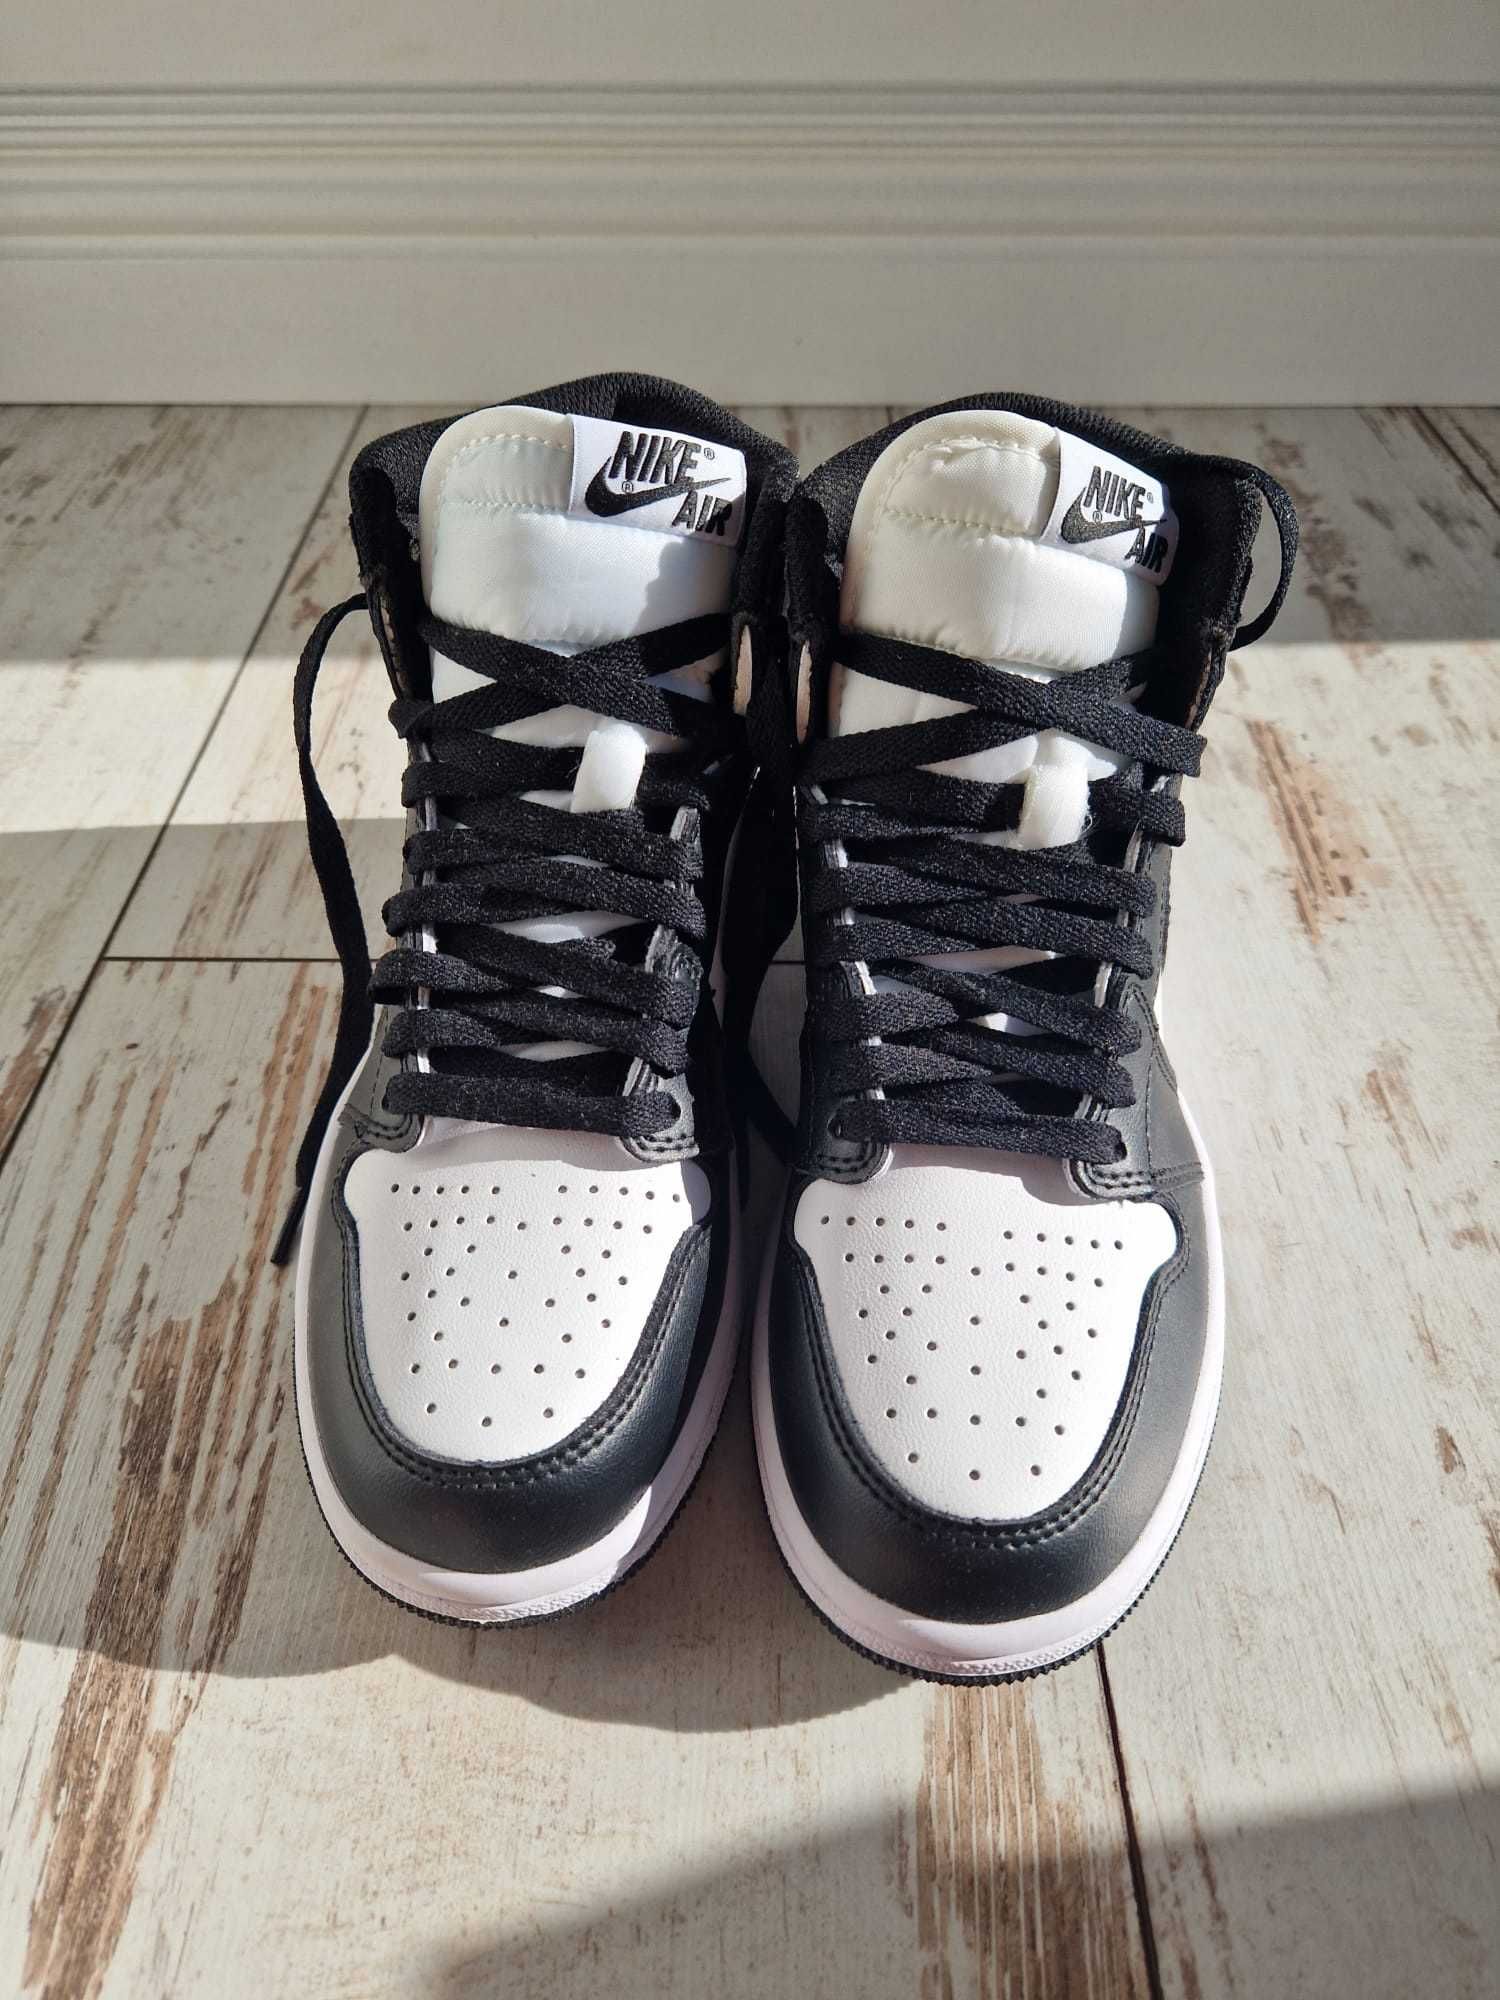 Buty Nike Air Jordan 1 rozmiar 37